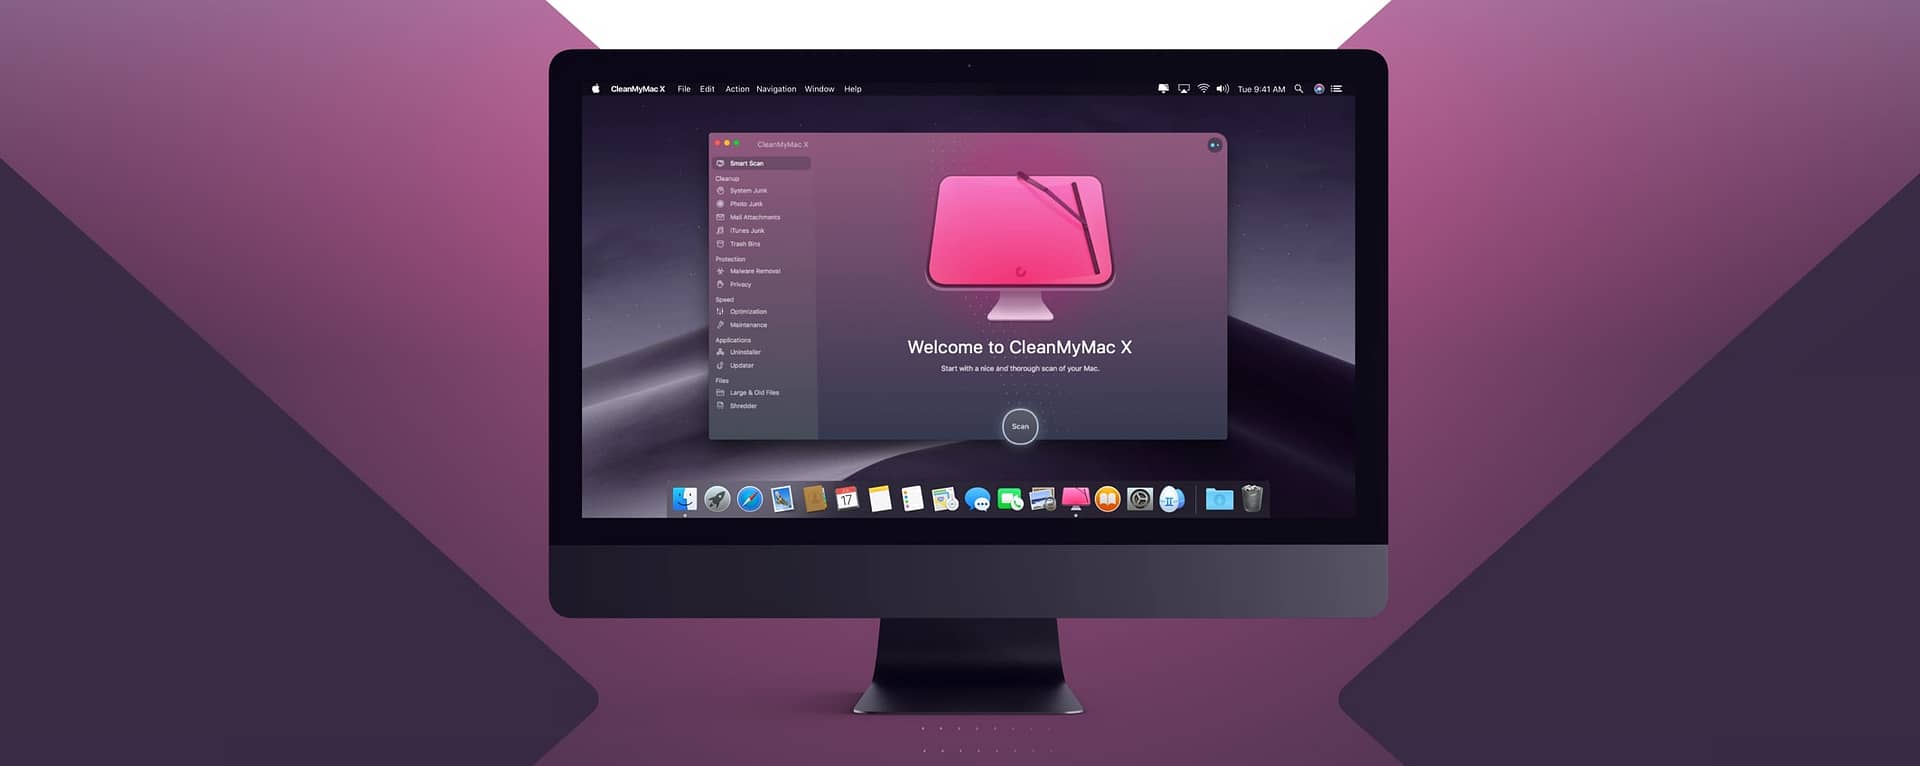 MacPaw CleanMyMac X Review